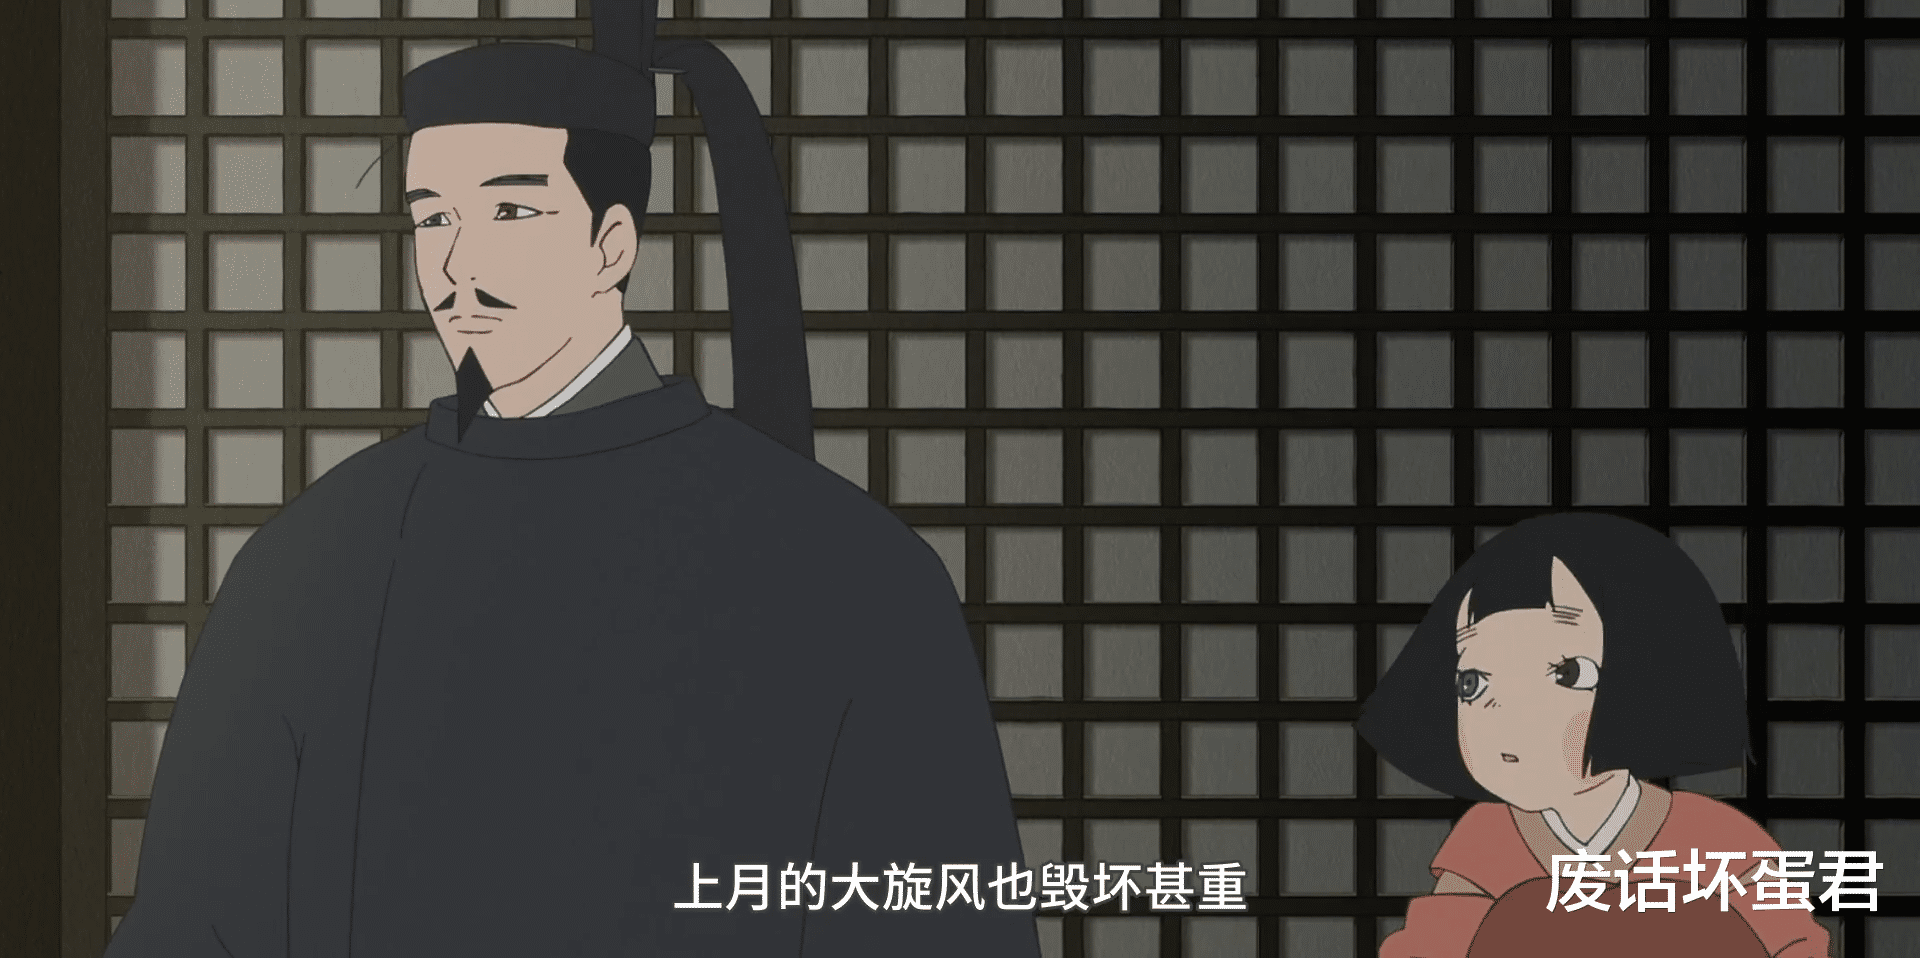 平家物语|高分冷门动画作品《平家物语》，改编自日本古典史书，没有一定基础还看不懂